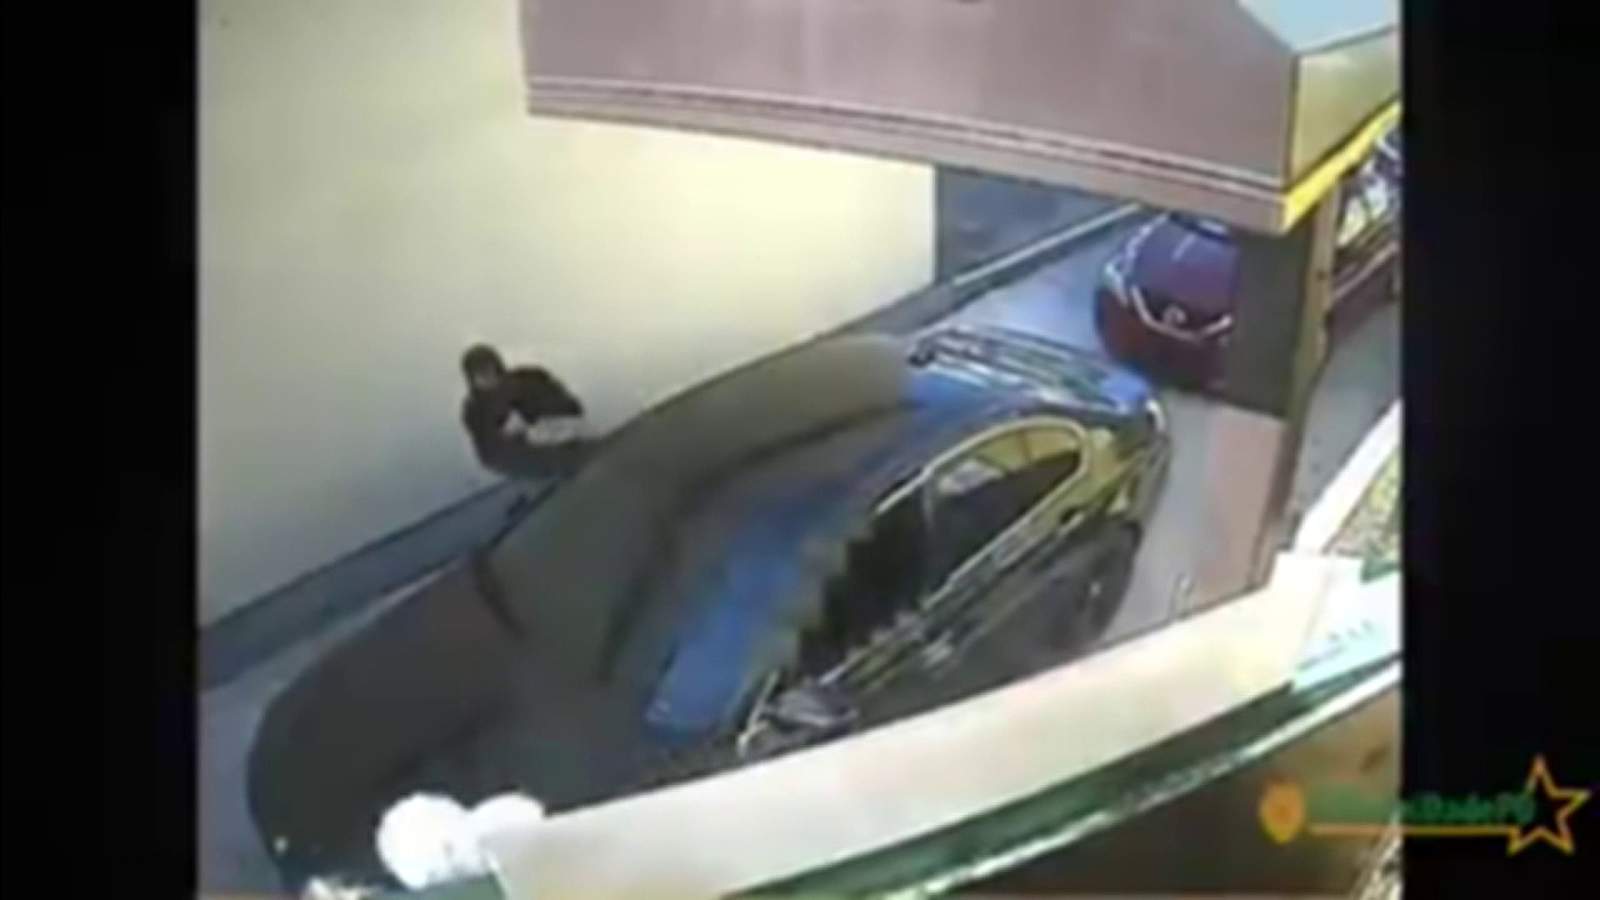 Shameless thieves ambush a car at Pollo Tropical’s drive-thru